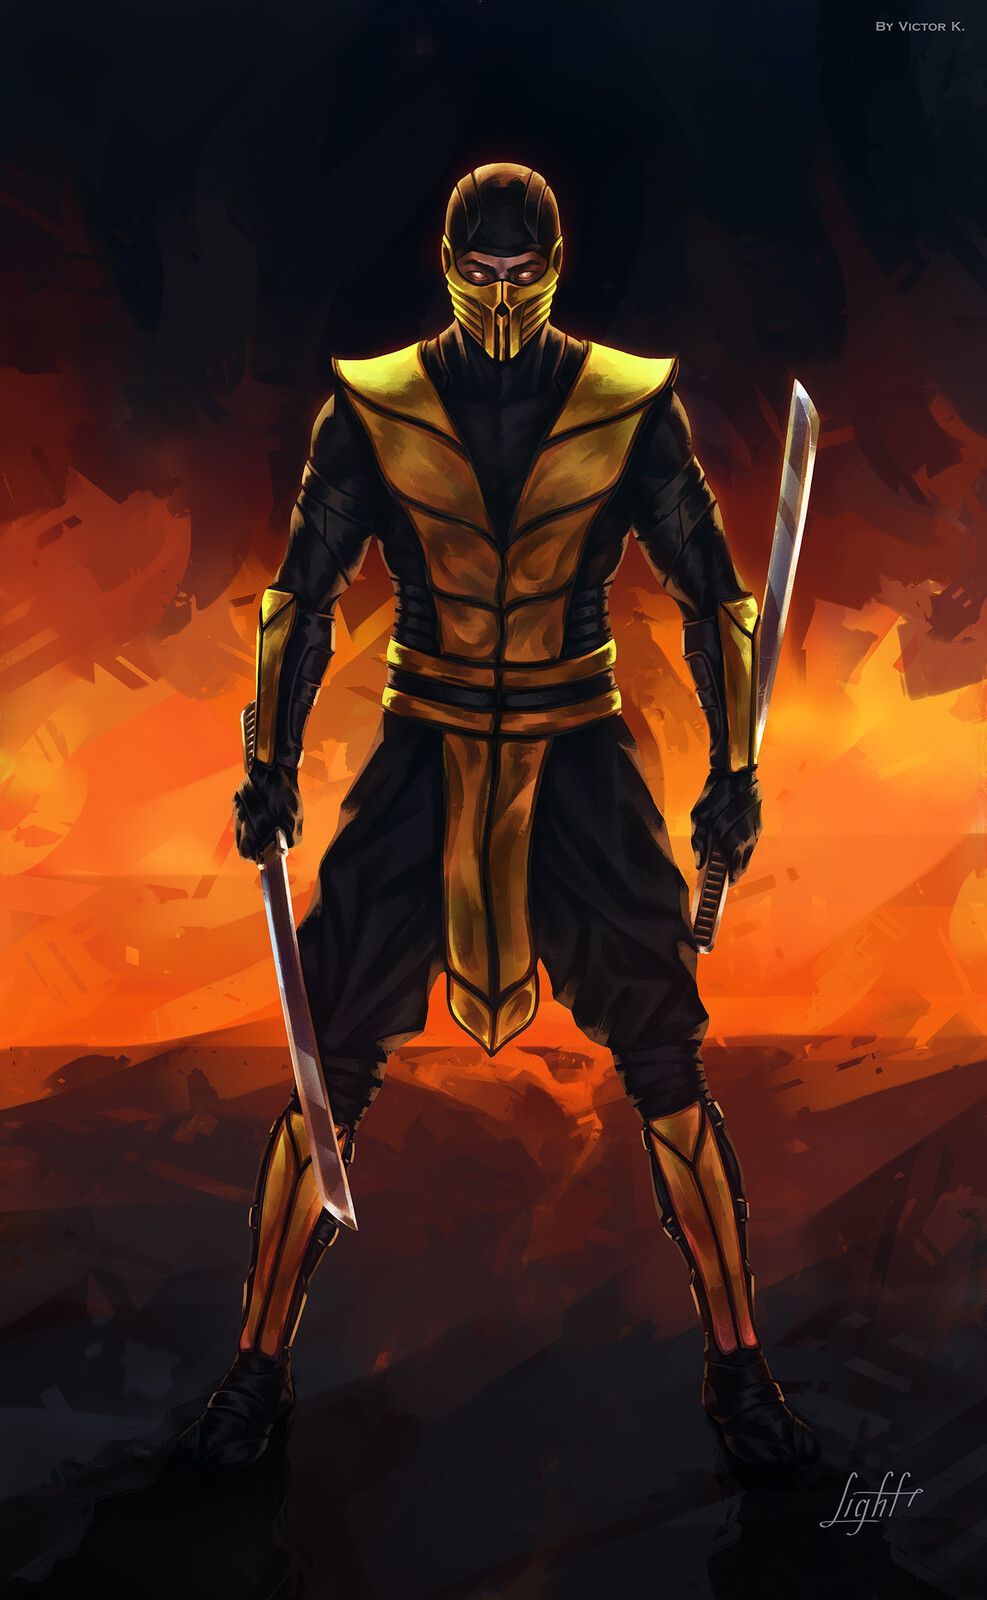 Mortal Kombat: Hanzo Hasashi (Scorpion)/ar. Mortal kombat art, Scorpion mortal kombat, Raiden mortal kombat